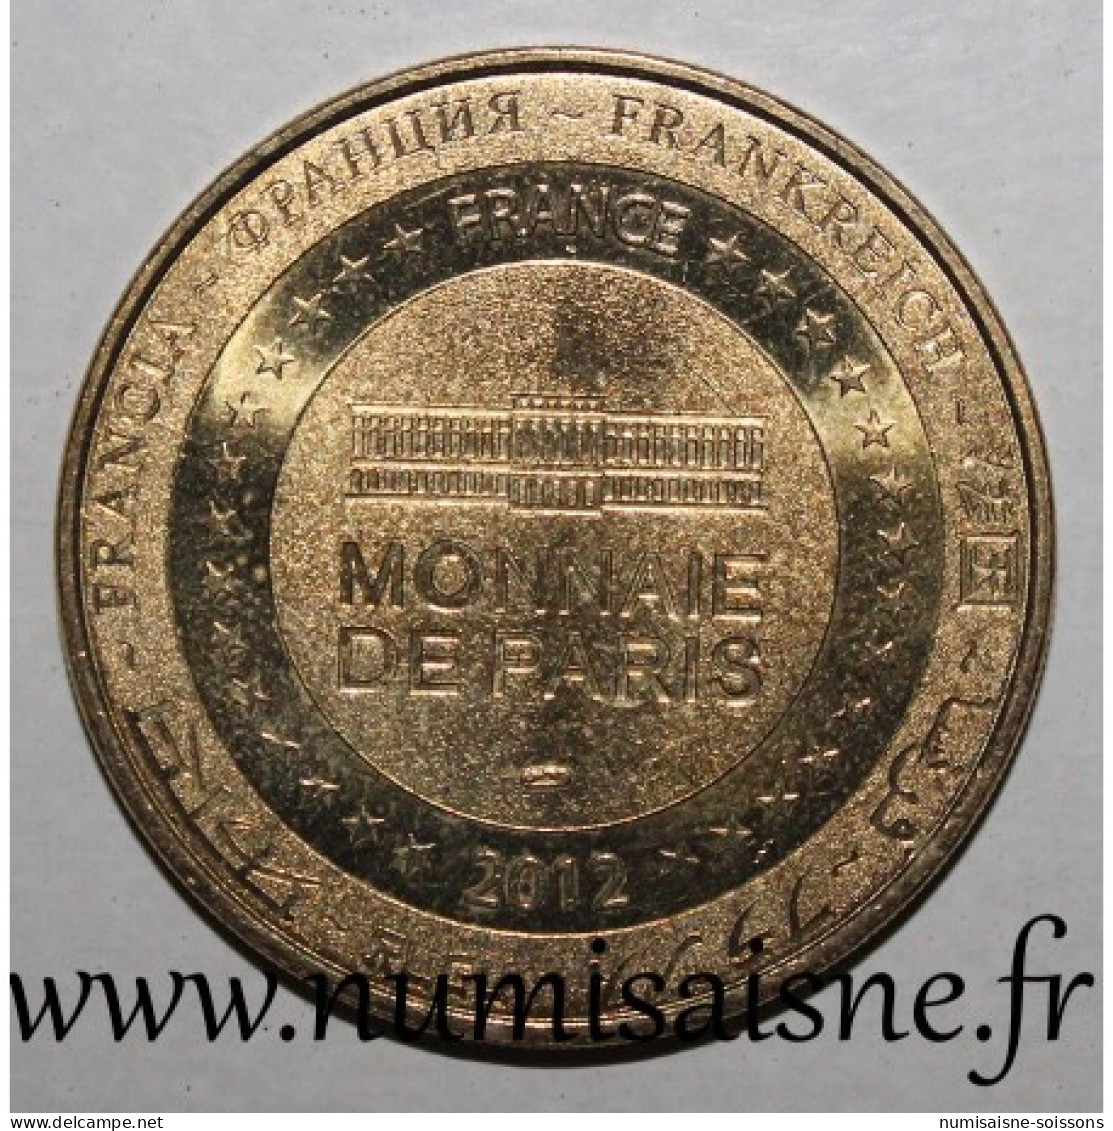 45 - CHILLEURS AUX BOIS - Château De Chamerolles - Monnaie De Paris - 2012 - 2012